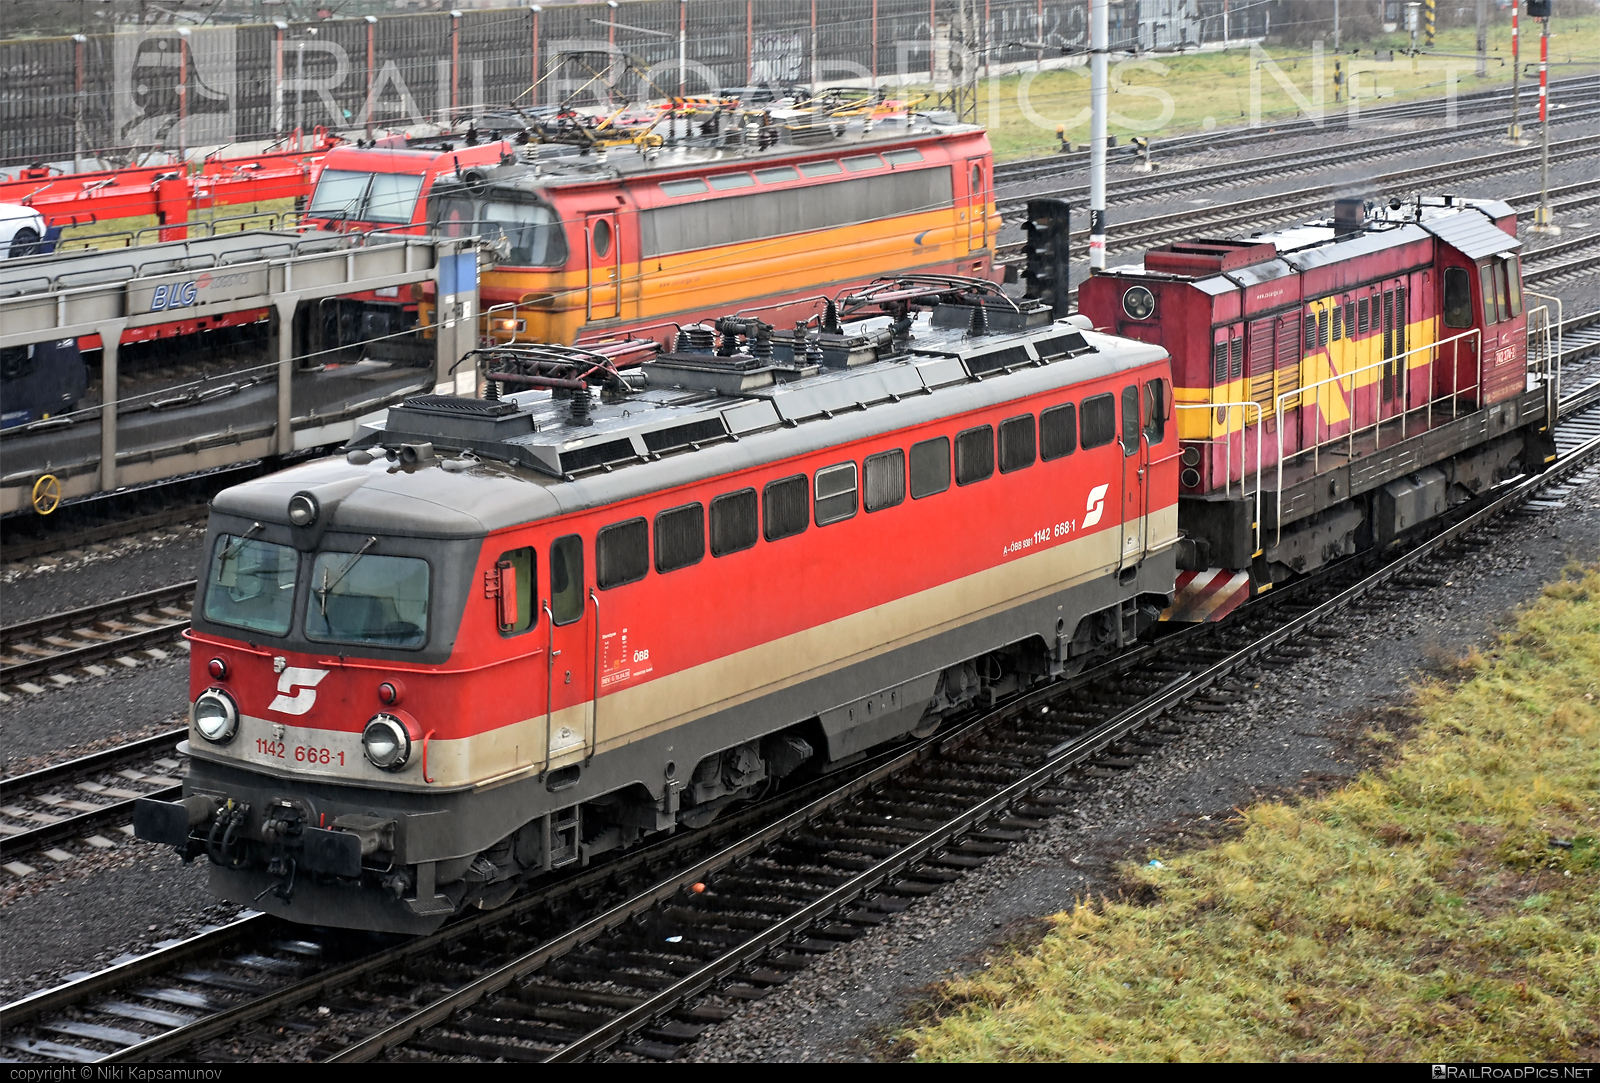 SGP ÖBB Class 1142 - 1142 668-1 operated by Rail Cargo Austria AG #obb #obbclass1142 #osterreichischebundesbahnen #rcw #sgp #sgp1142 #simmeringgrazpauker